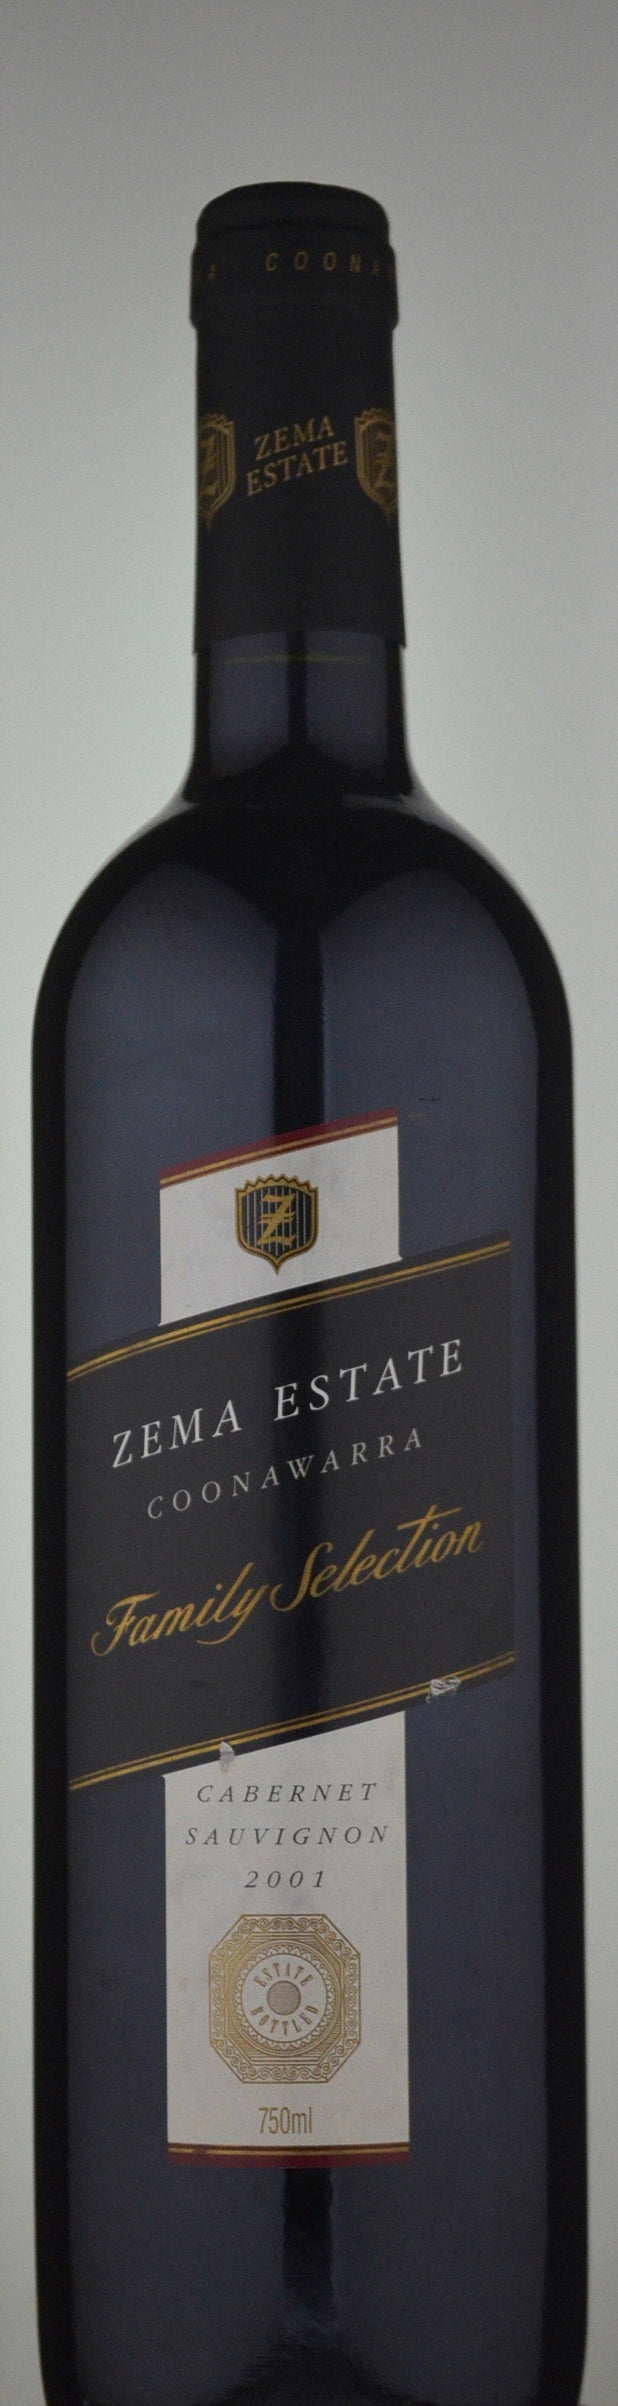 Zema Estate Family Selection Cabernet Sauvignon 2001